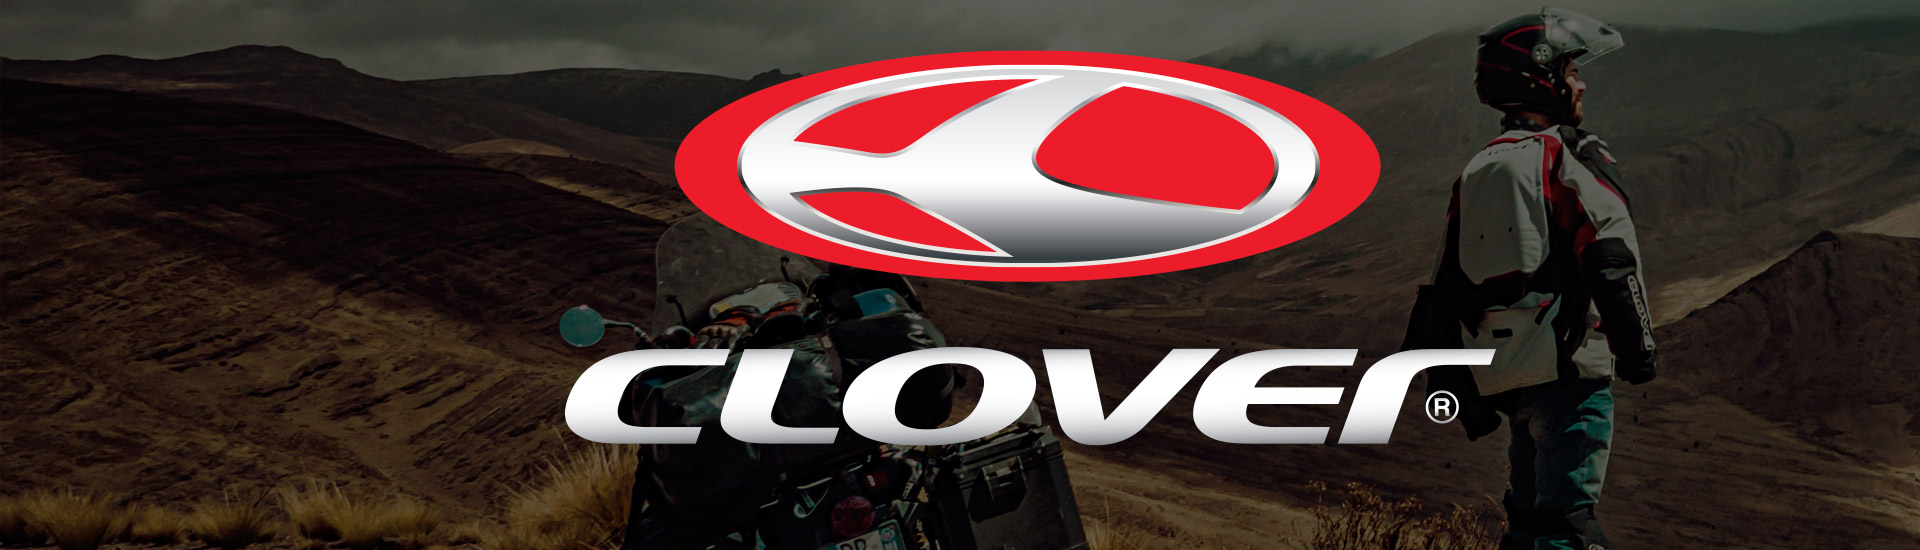 Olek Motocykle wyłącznym importerem marki Clover